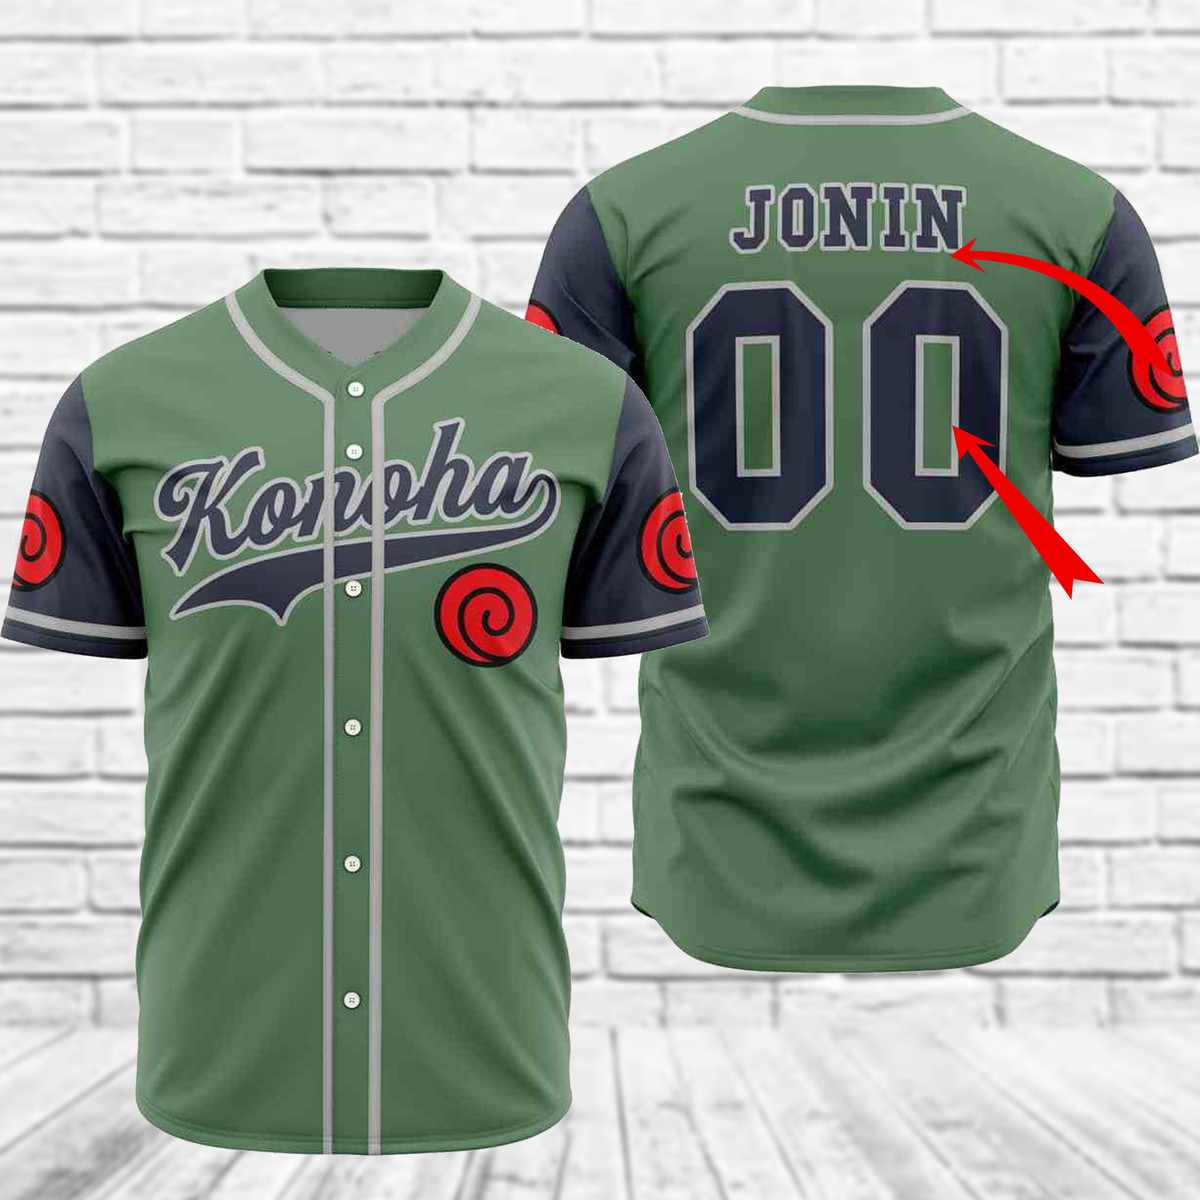 Personalized Konoha Naruto Baseball Jersey